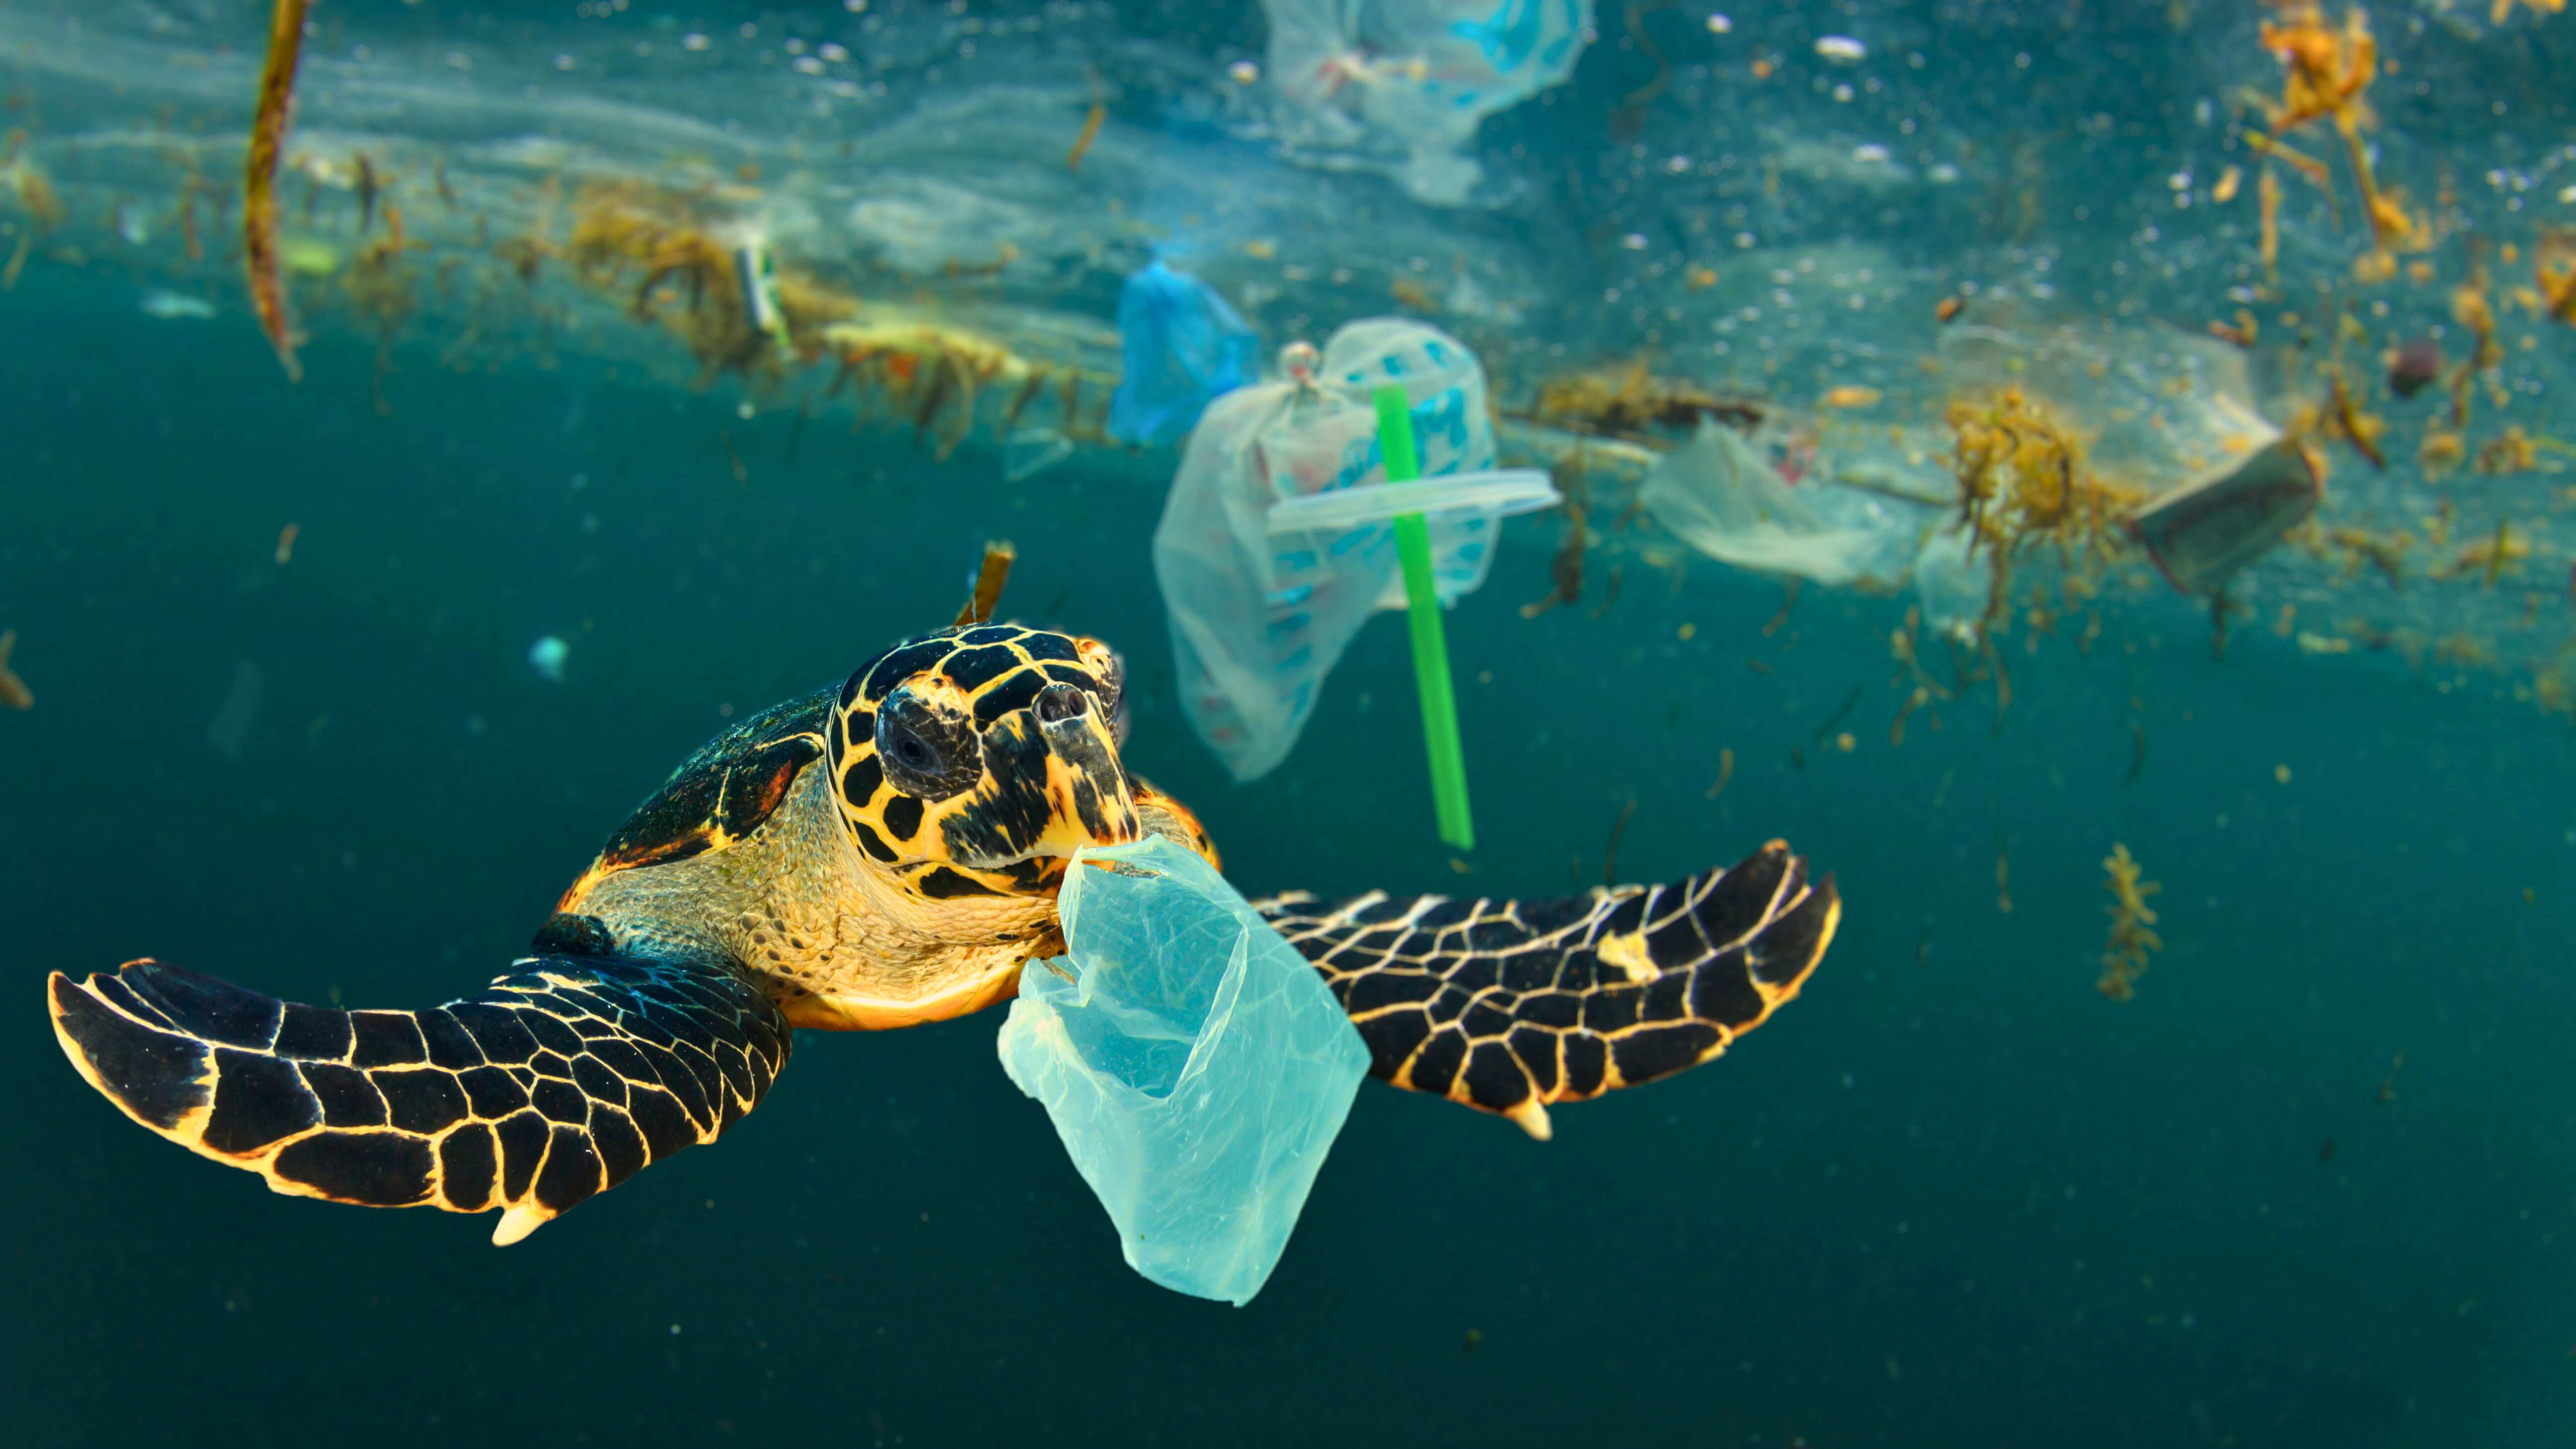 La pollution aux plastiques touche l'humanité entière, mais aussi tout le monde vivant. Des contraintes juridiques doivent être adoptées mondialement pour endiguer ce danger majeur. © Richard Carey, Adobe Stock